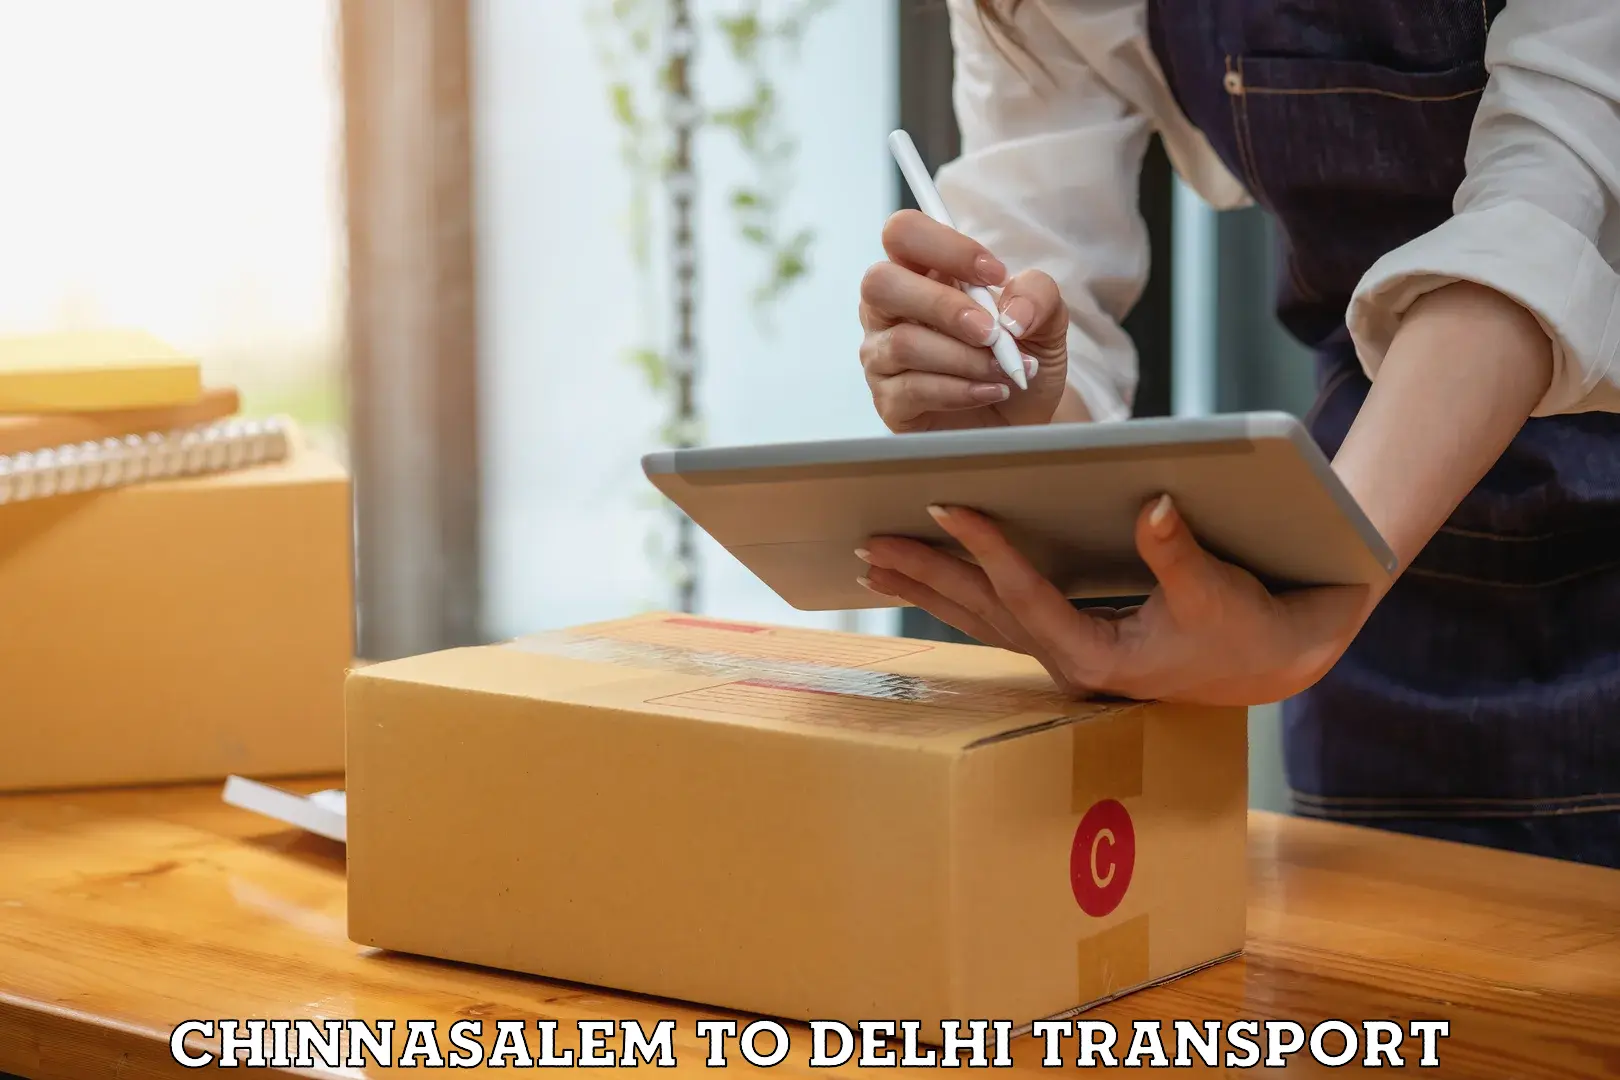 Express transport services Chinnasalem to Delhi